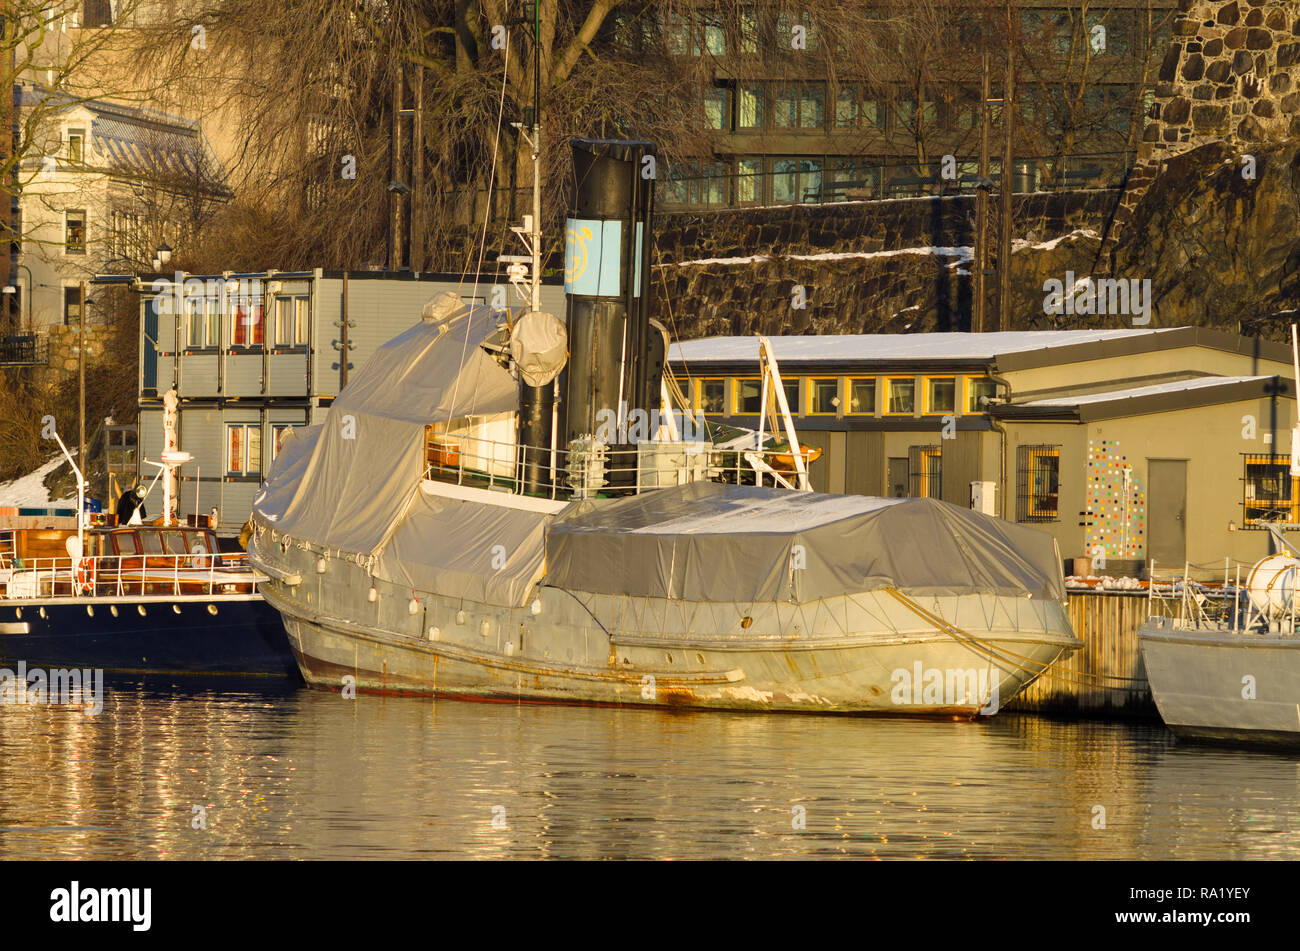 Alte pensionierte Tauziehen als Museum - Schiff in Oslo Hafen, für Kurzurlaub im Winter abgedeckt festgemacht, und teilweise mit Schnee bedeckt, mit Akershus Festung im Hintergrund. Stockfoto